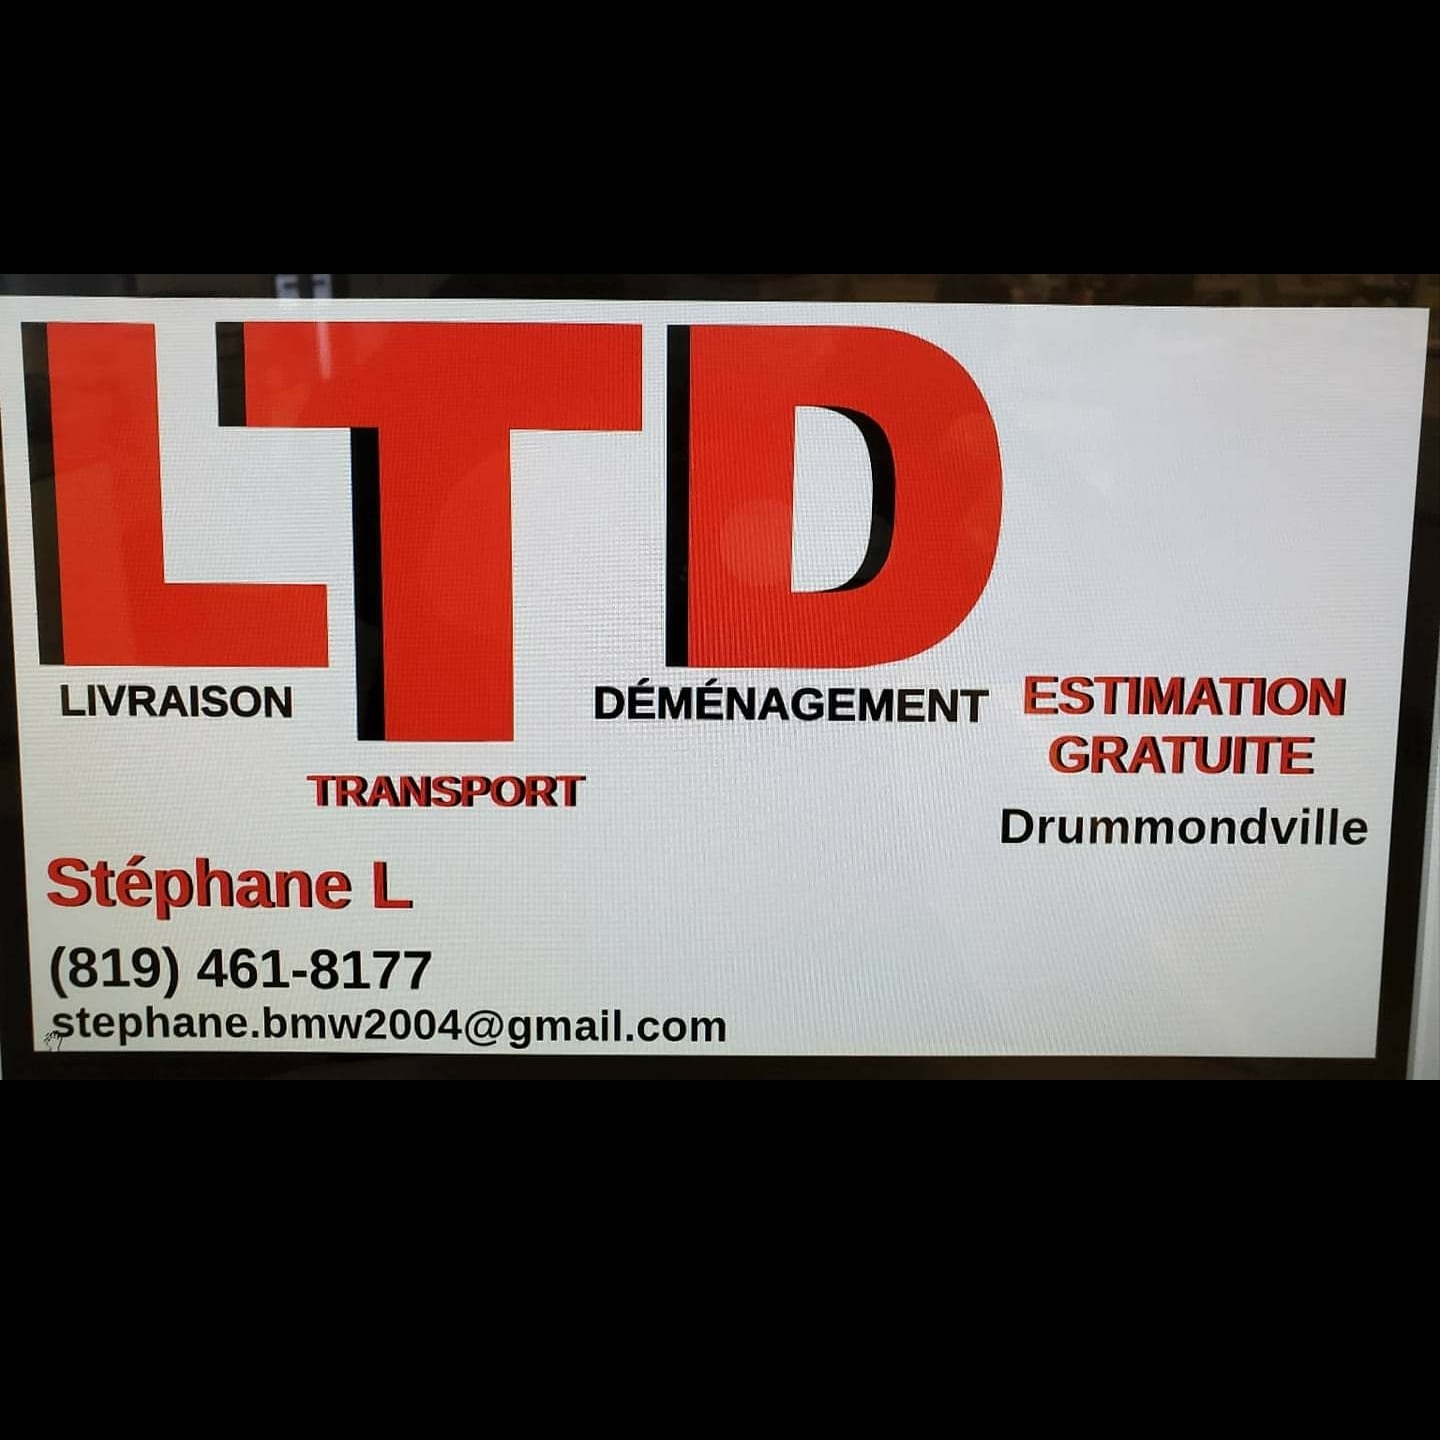 Stephane Lanteigne LTD Livraison Transport Demenagement - Moving Services & Storage Facilities